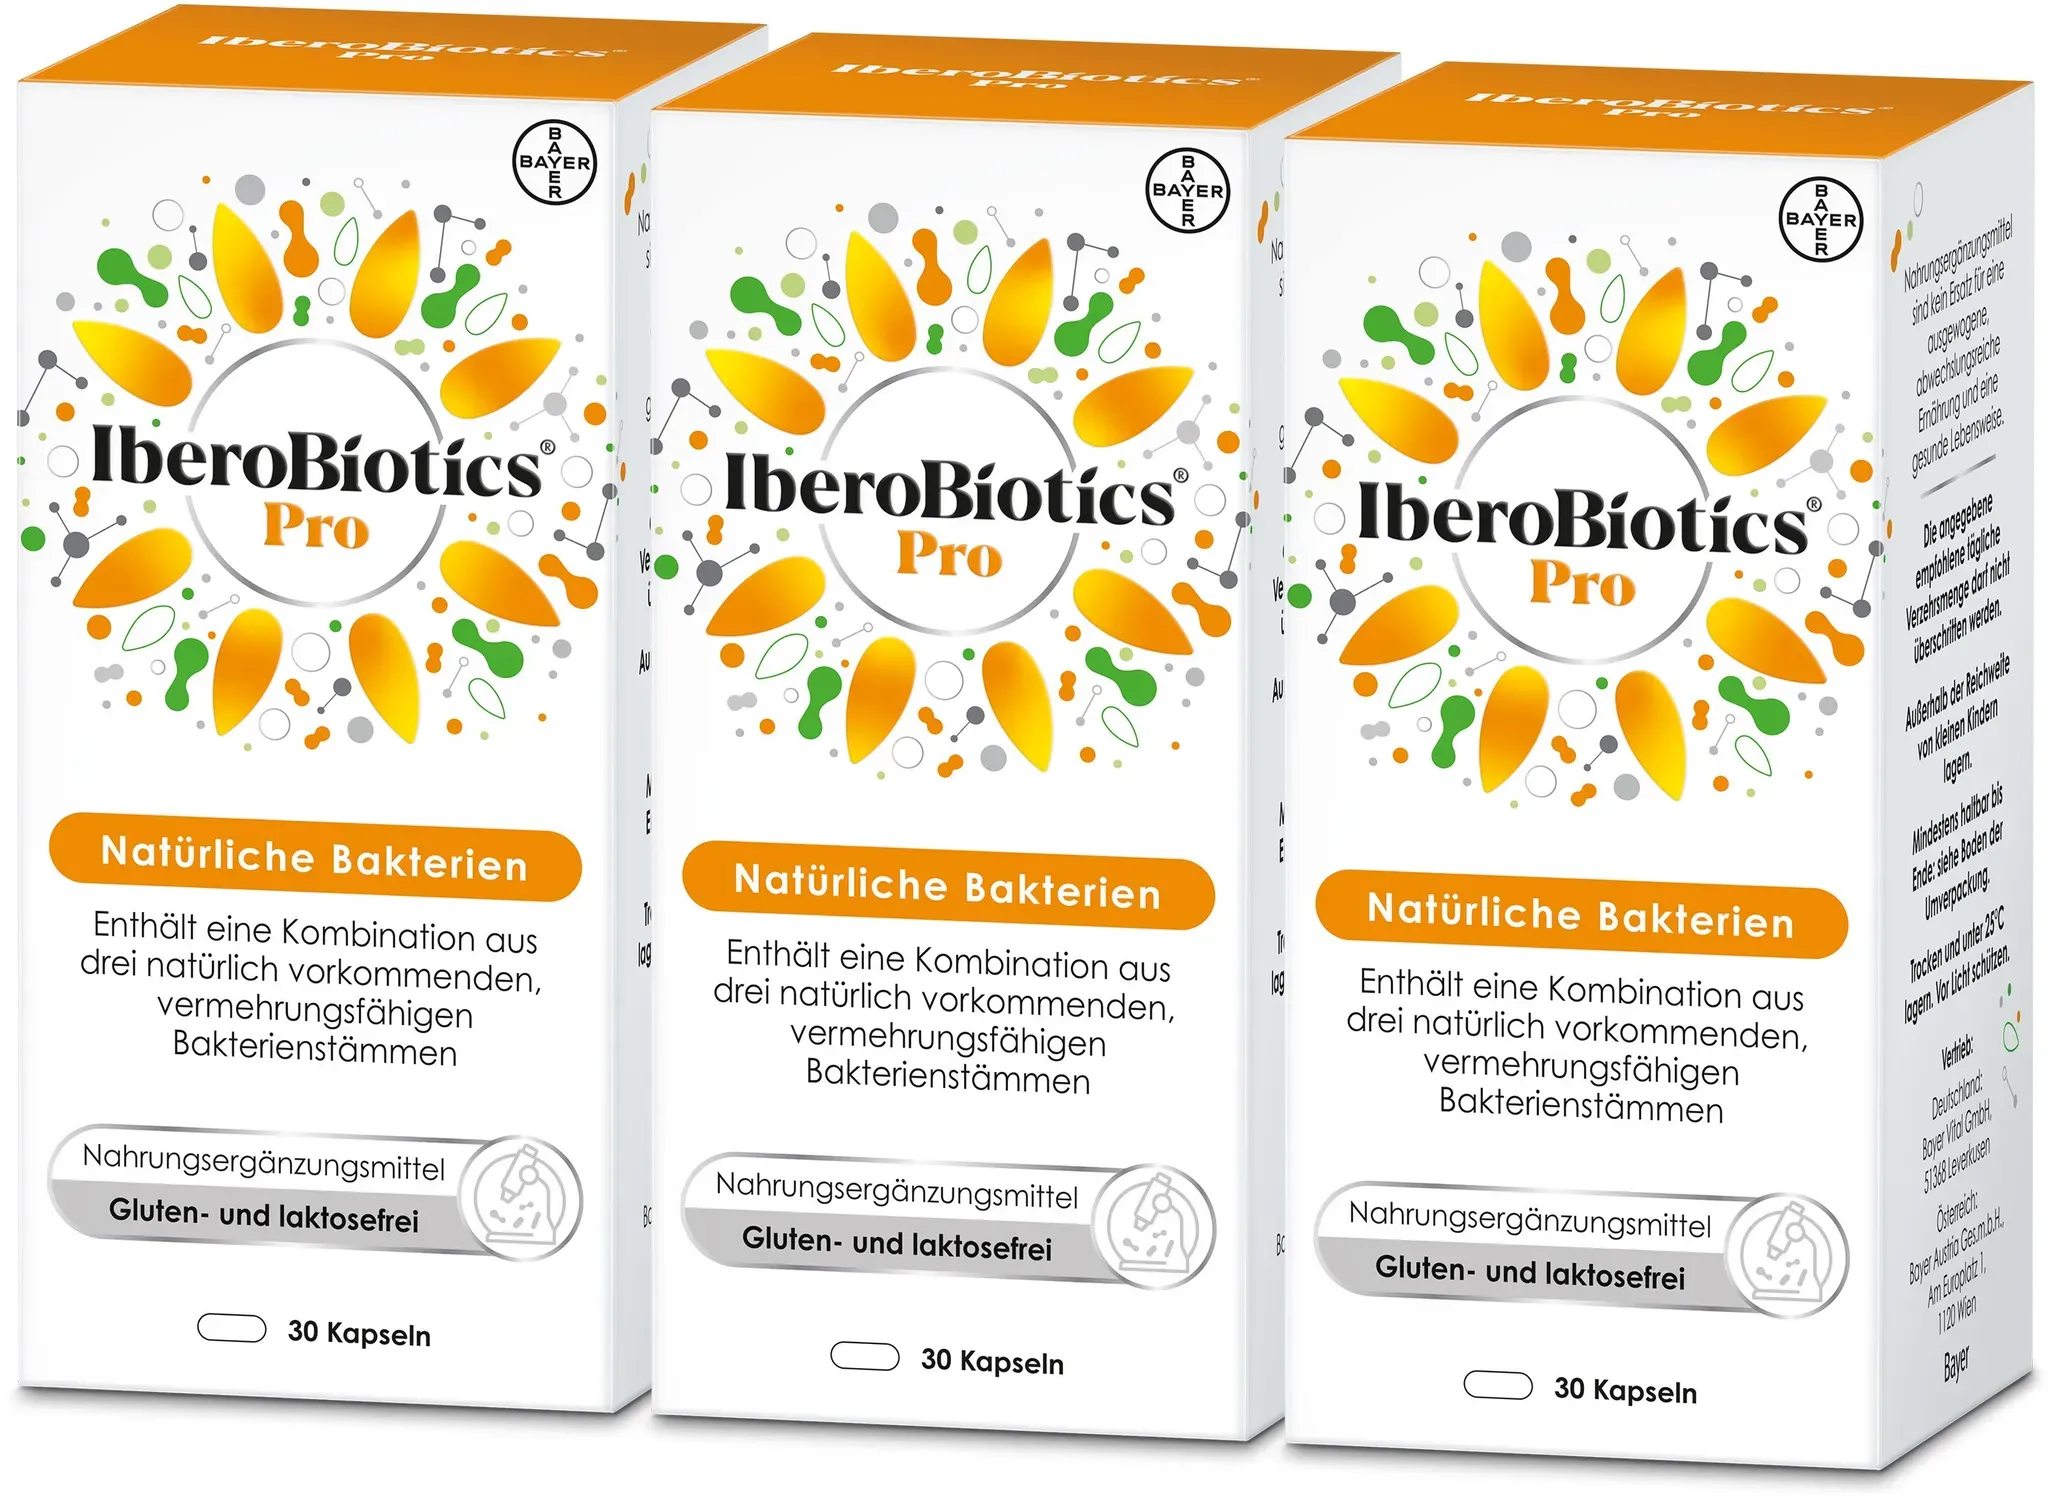 IberoBiotics® Pro - die PROaktive Ergänzung mit vermehrungsfähigen Bakterienstämmen